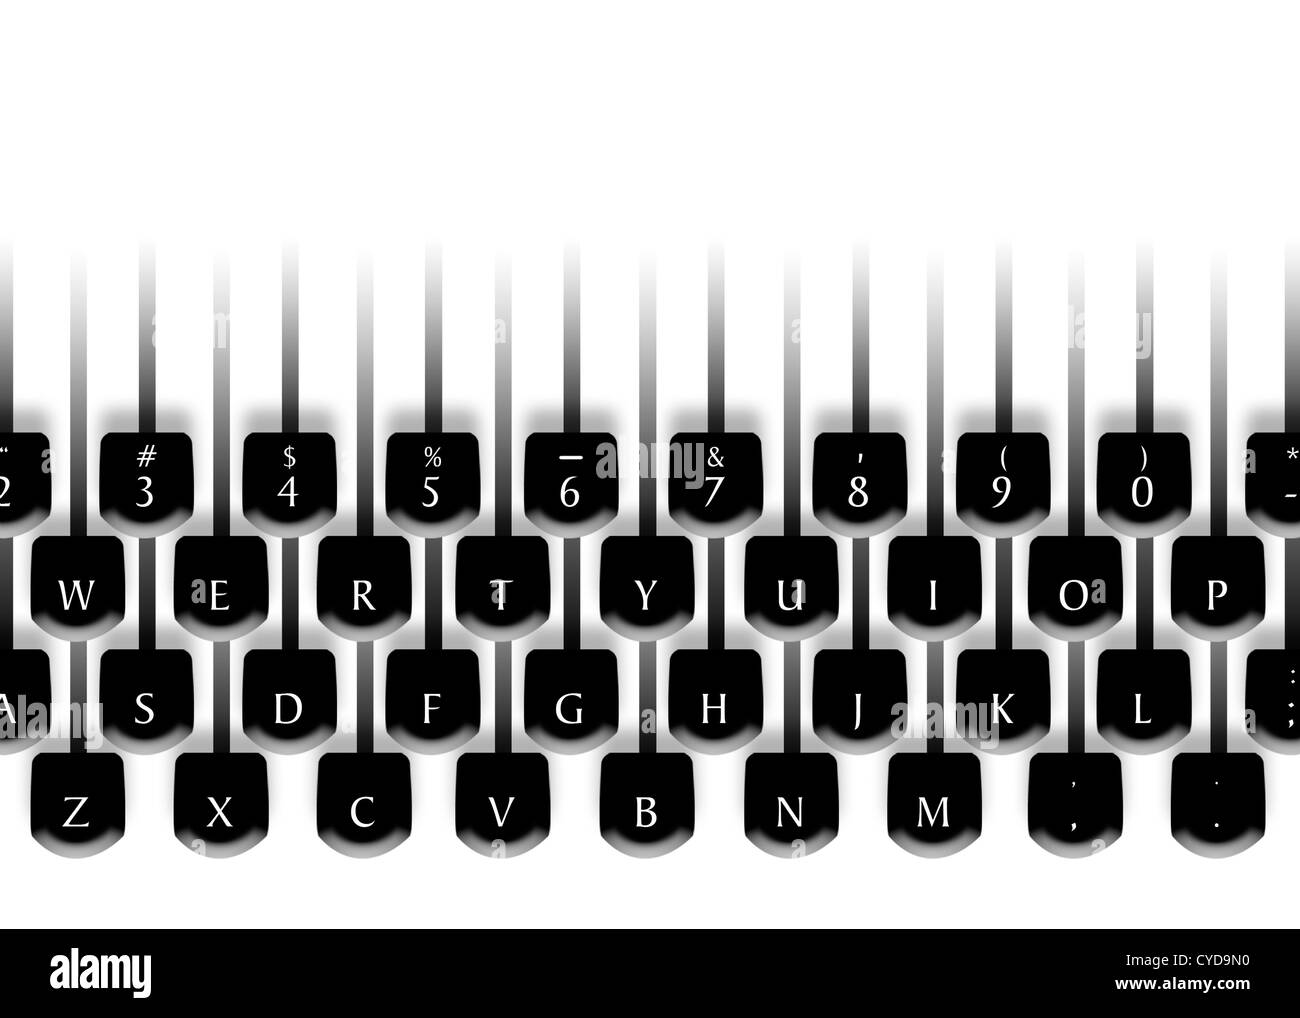 Teclado de maquina de escribir Imágenes de stock en blanco y negro - Alamy